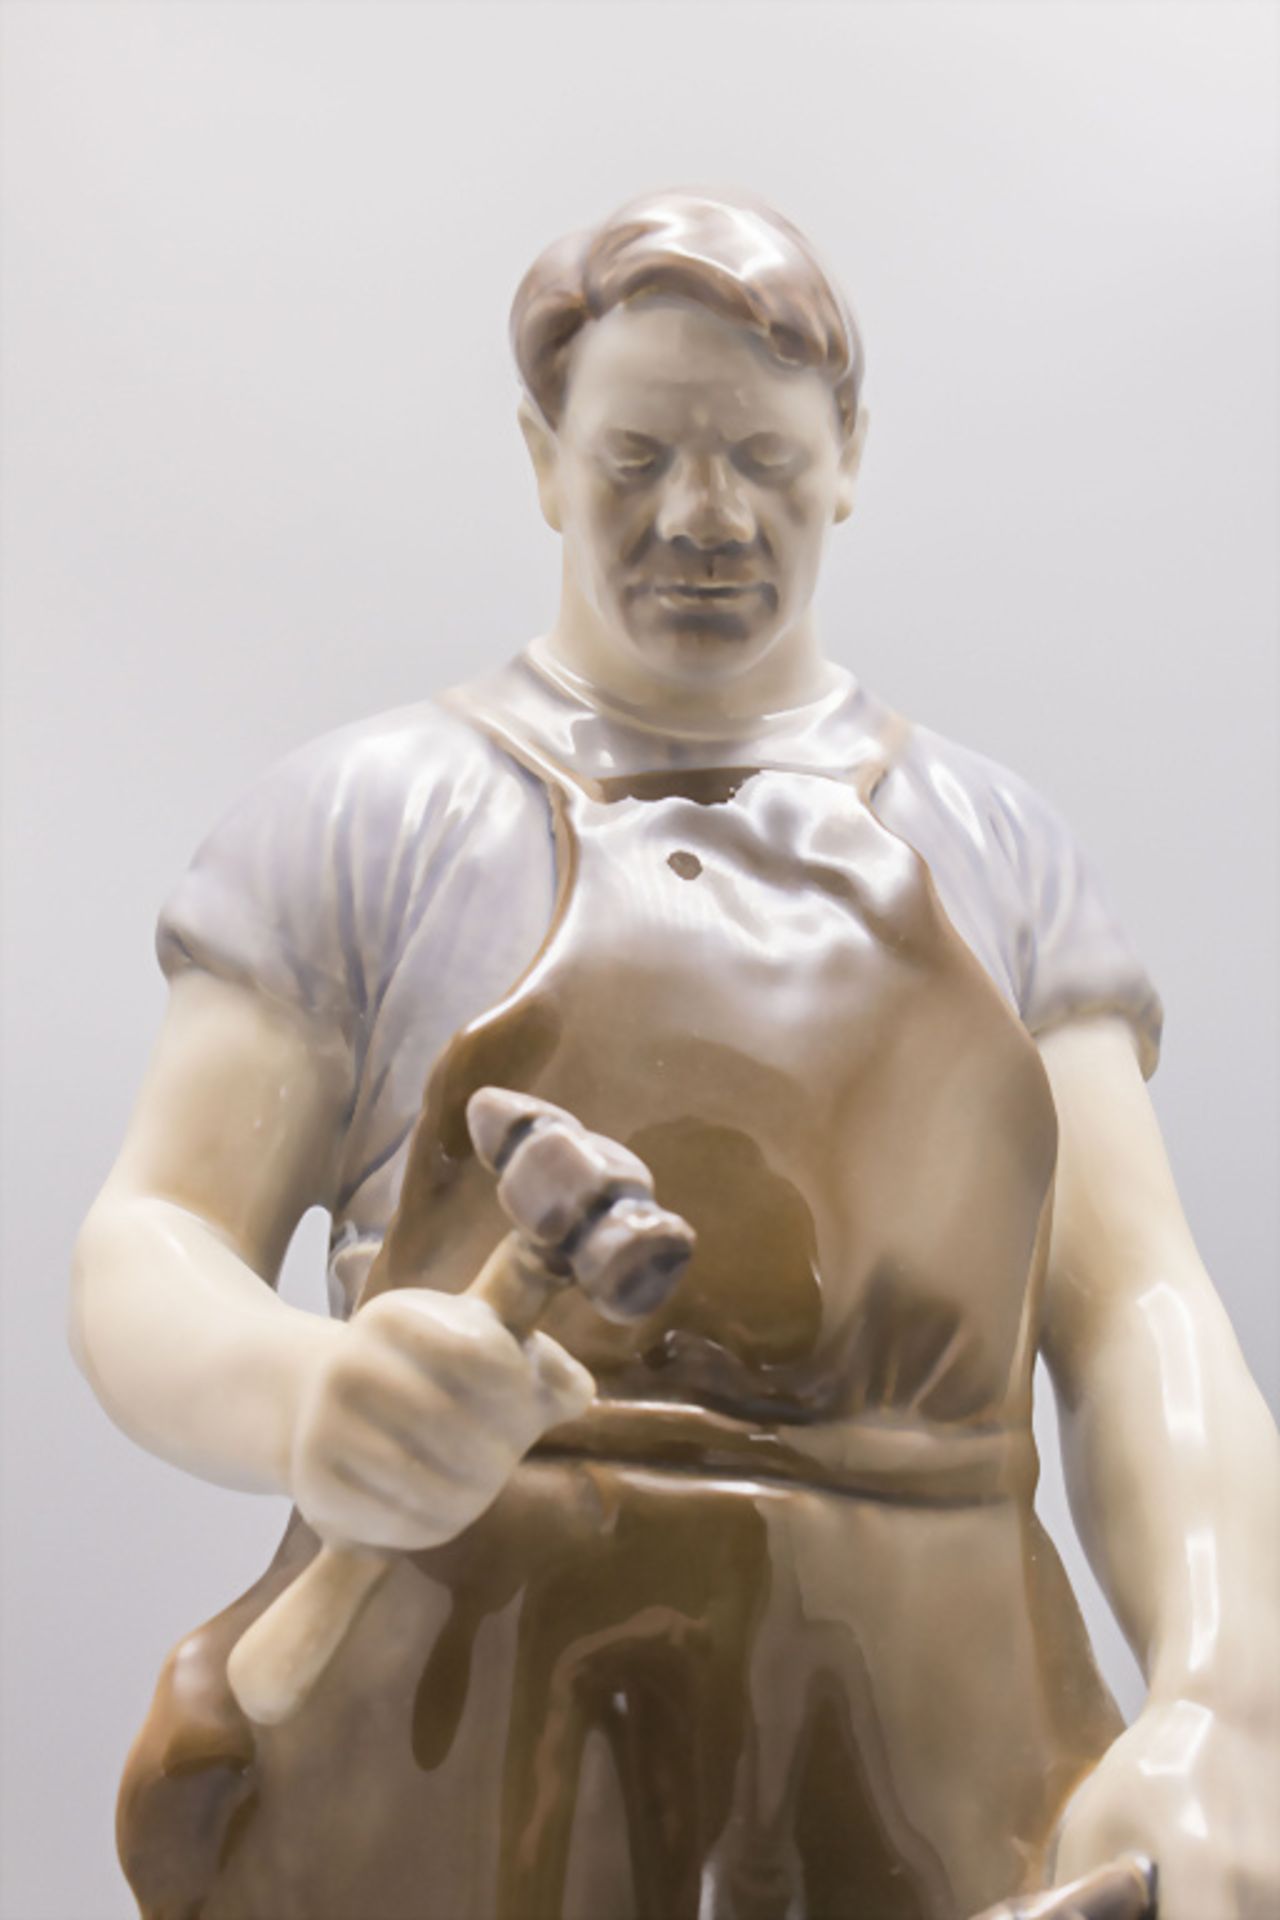 Porzellanfigur 'Schmied' / A porcelain figure of a blacksmith, Bing & Gröndahl, Copenhagen - Image 5 of 8